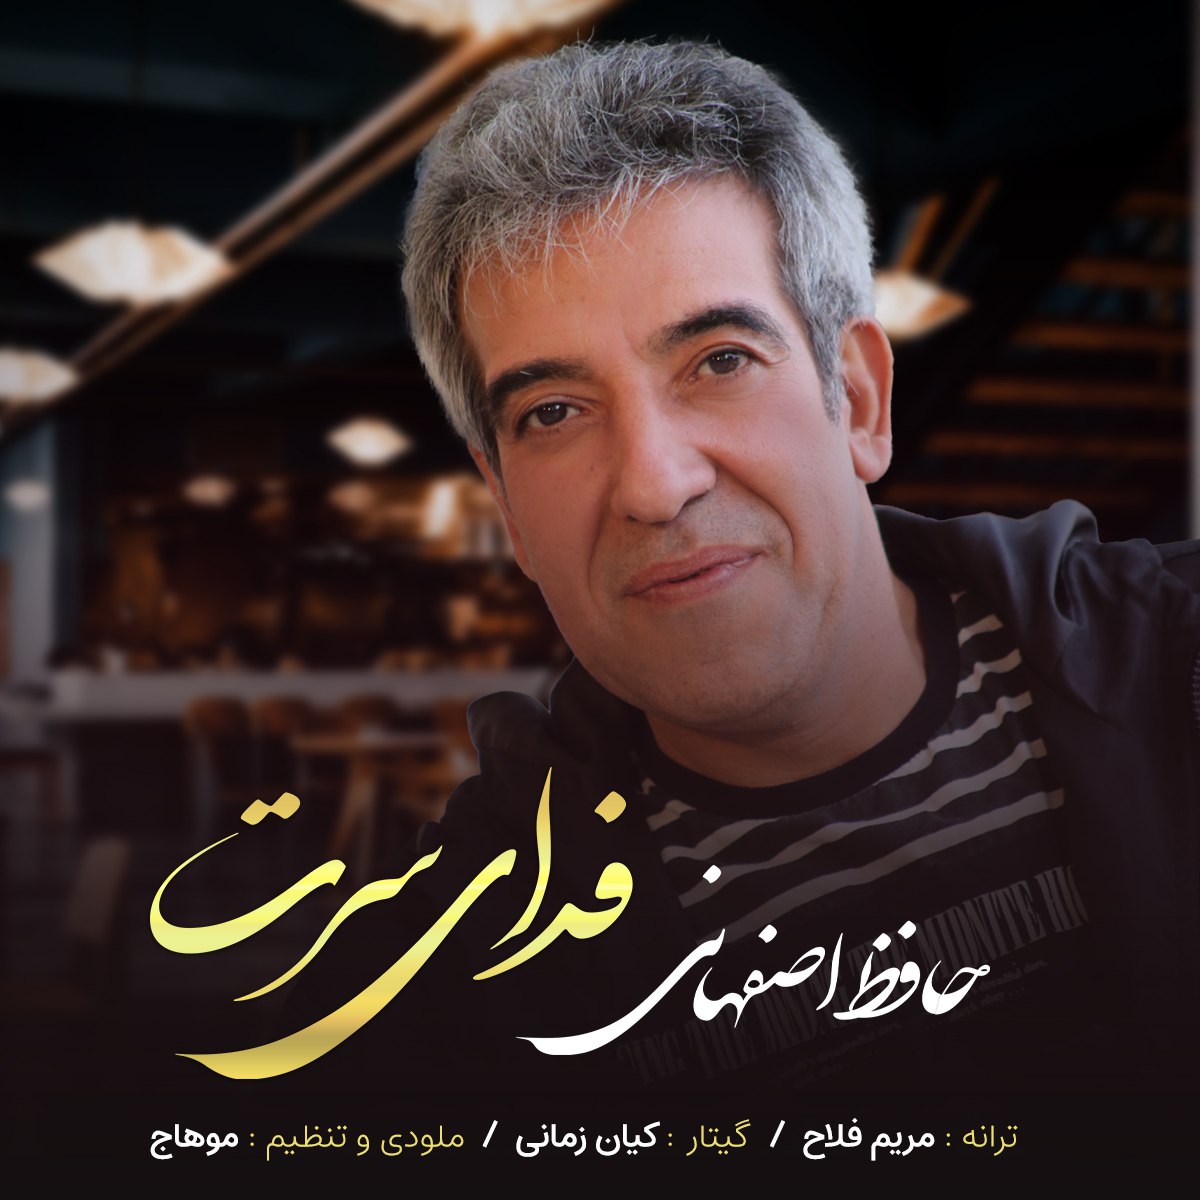 دانلود آهنگ جدید حافظ اصفهانی به نام فدای سرت